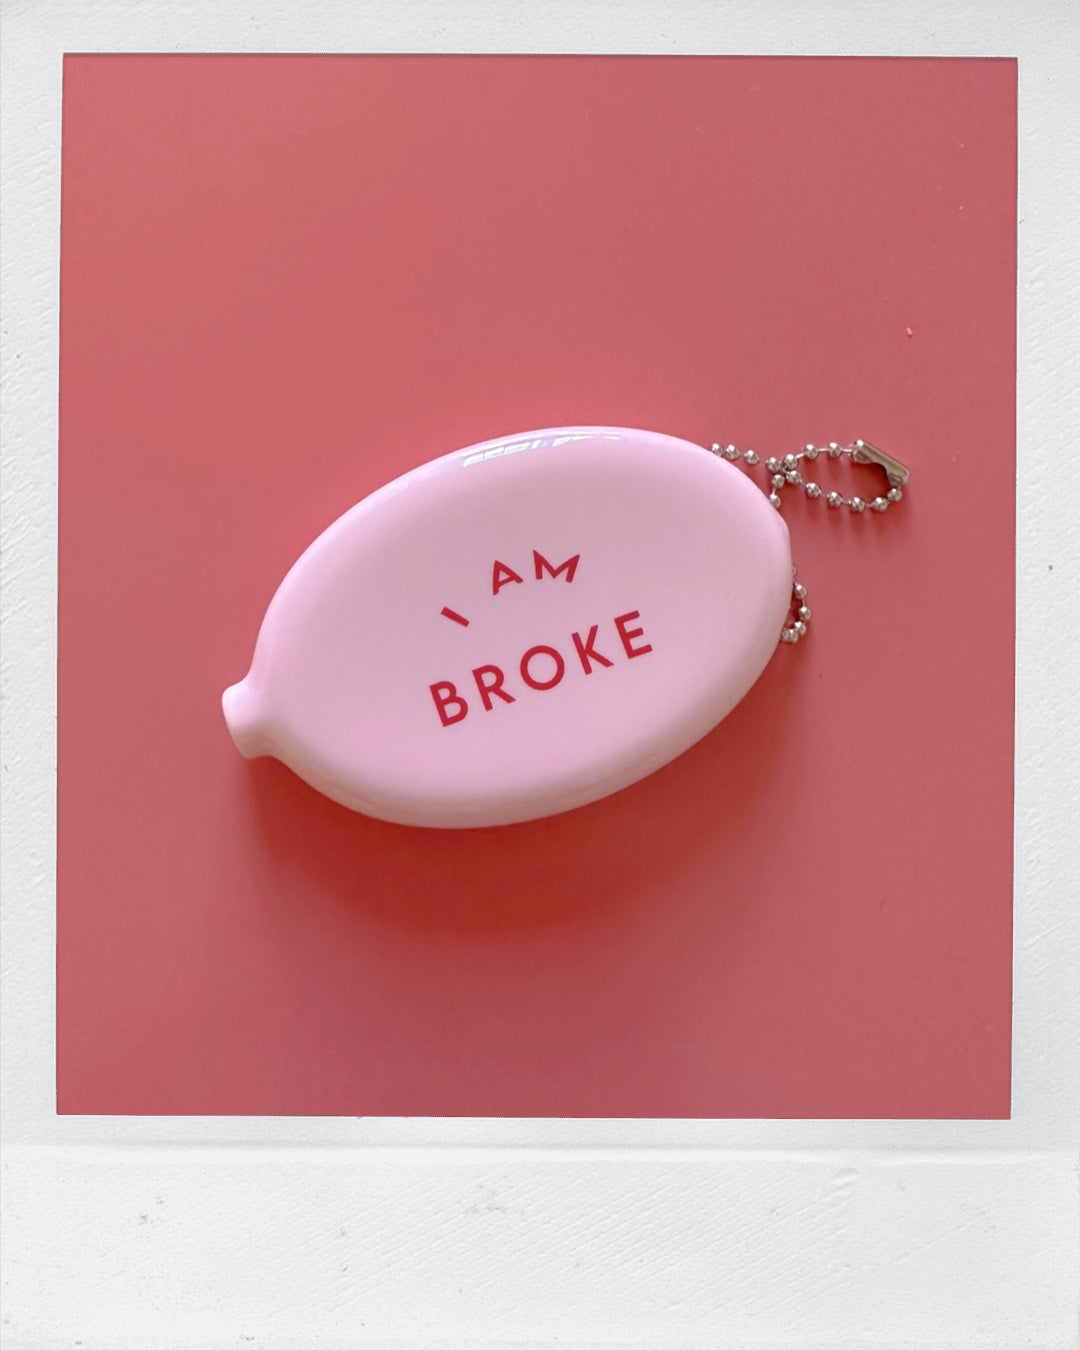 I'm broke - Rubber coin purse